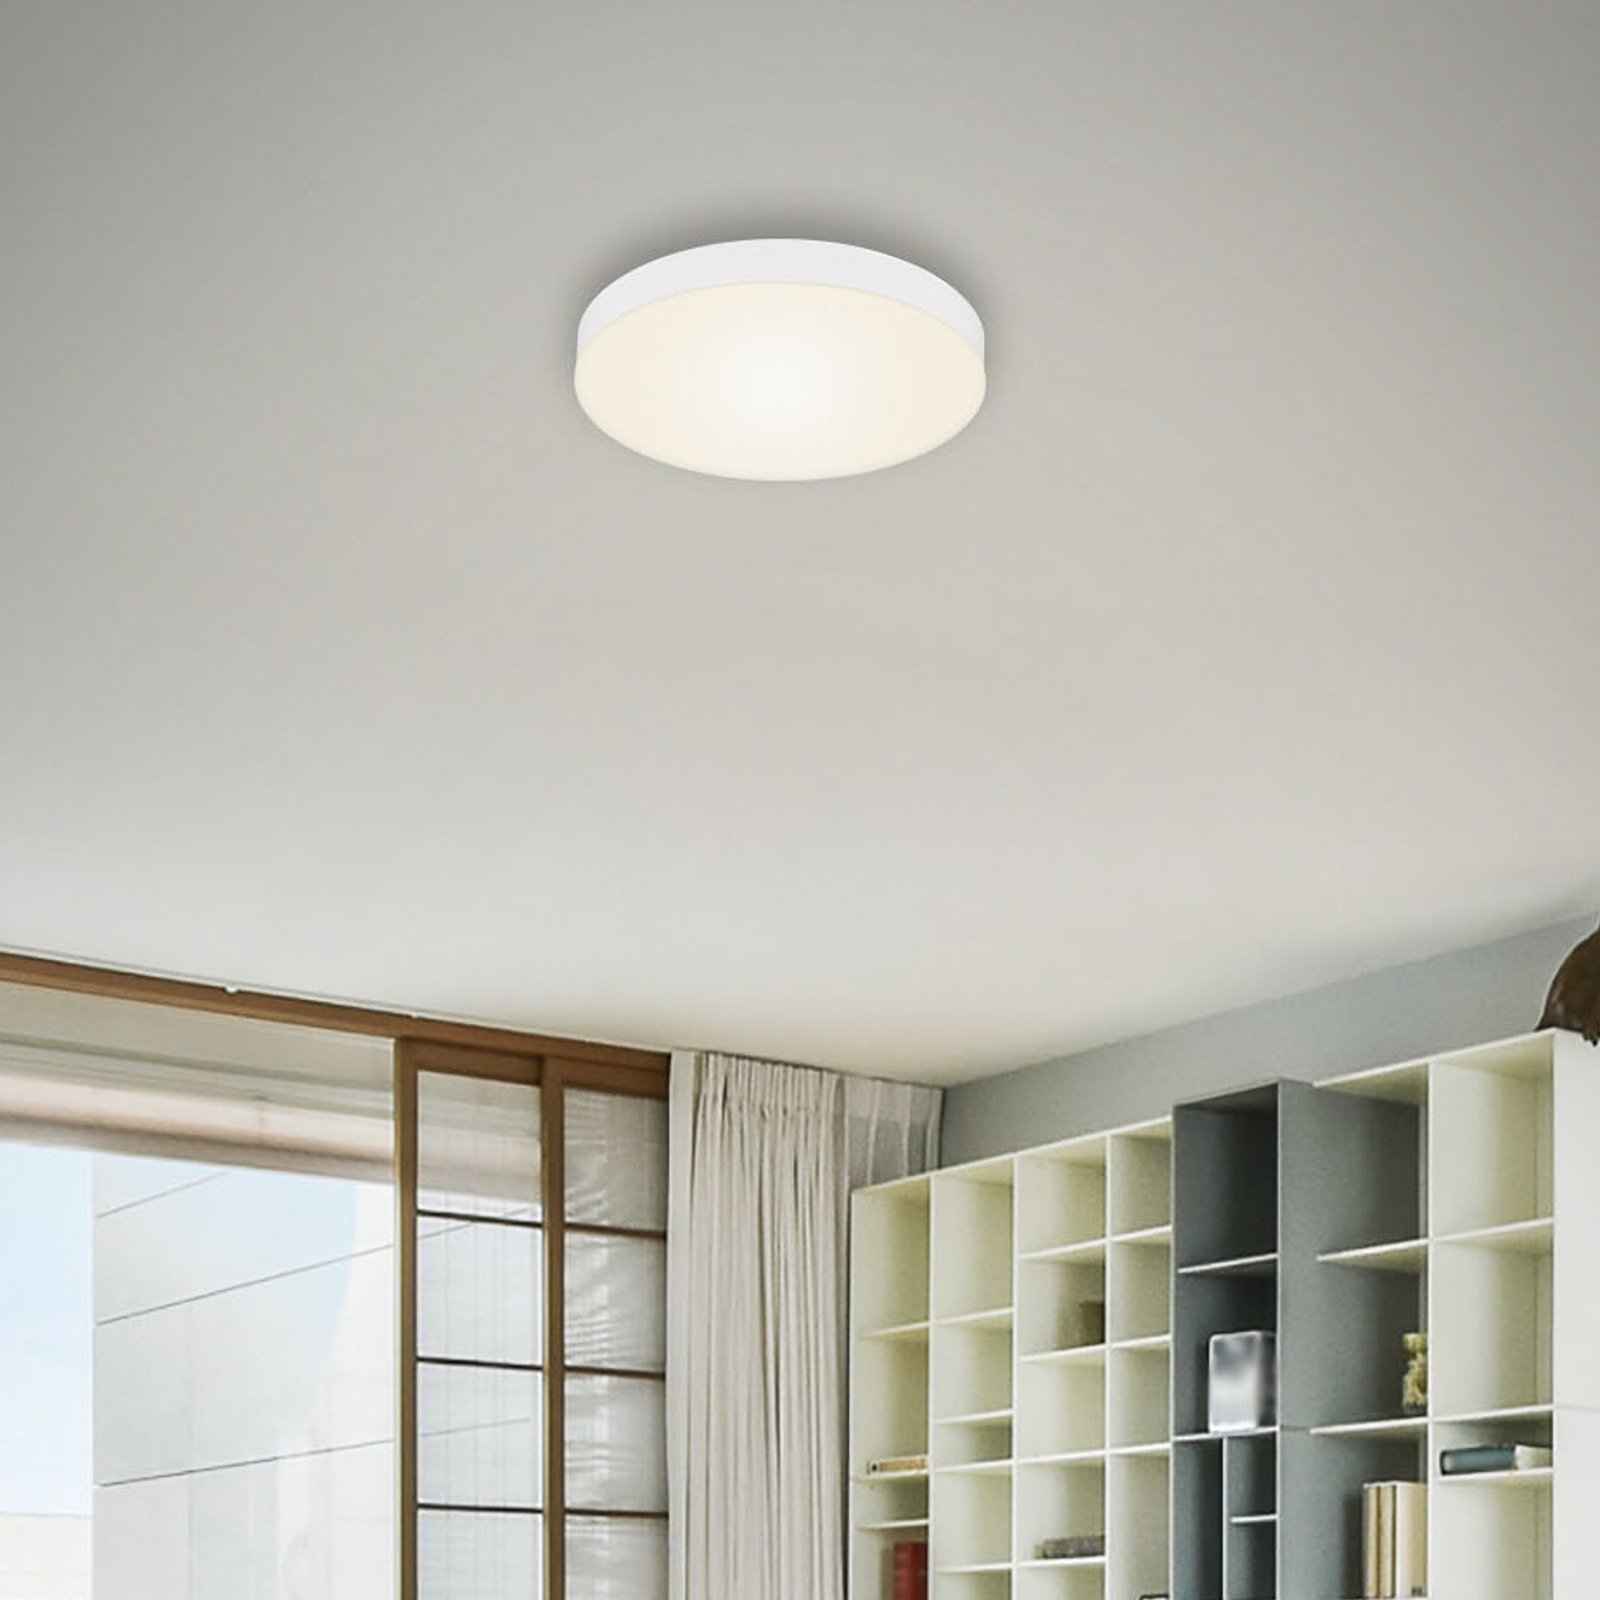 Flame LED ceiling light, Ø 21.2 cm, white